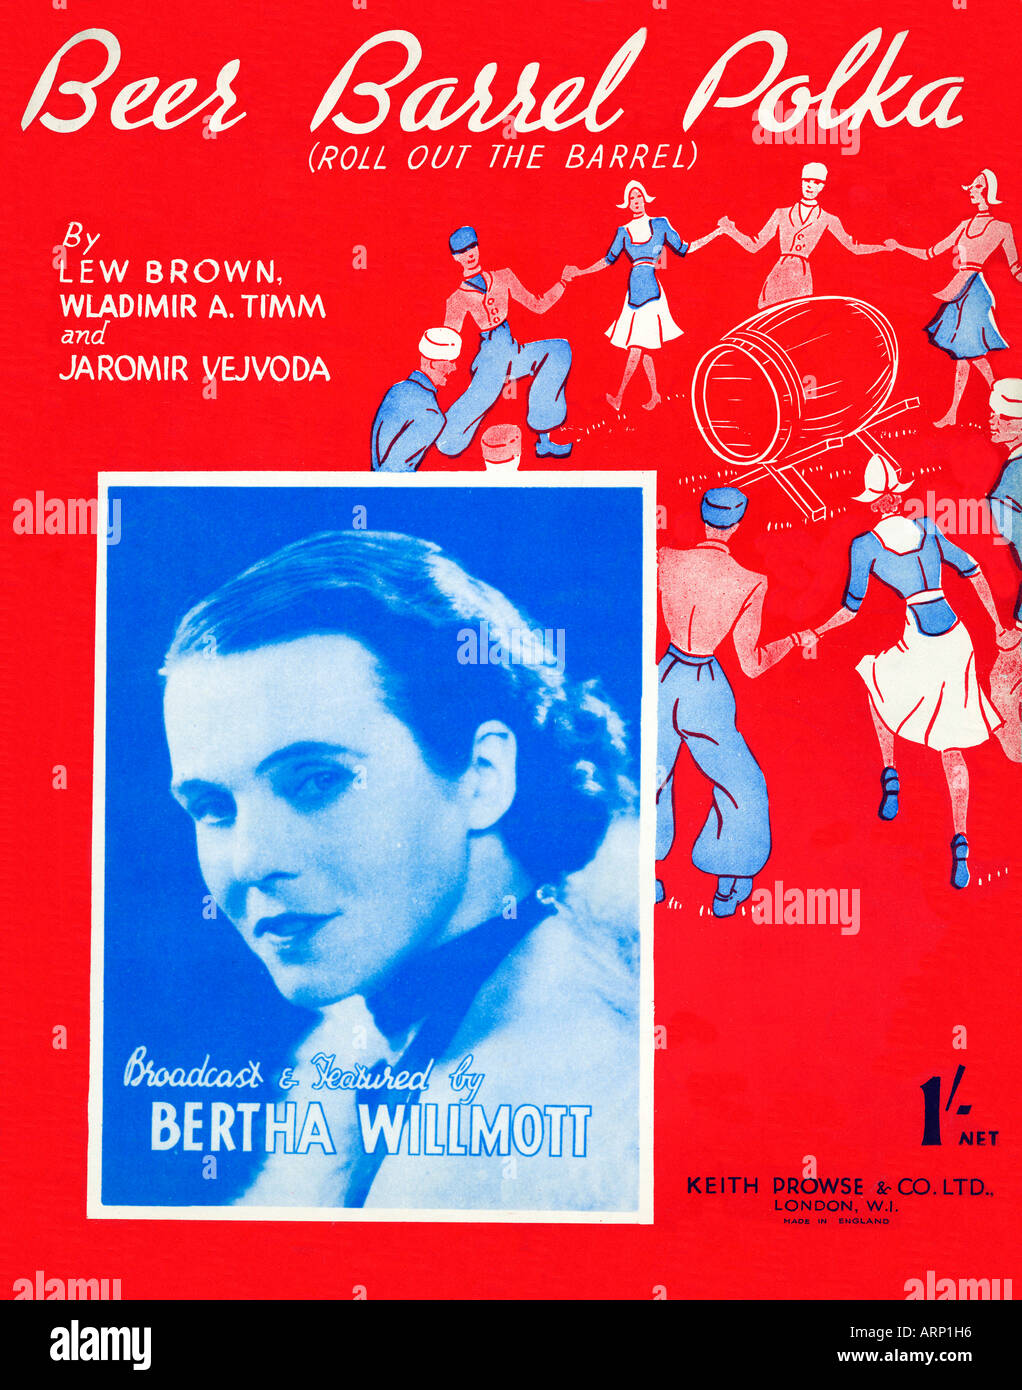 Beer Barrel Polka 1934 musica coperchio in foglio per la famosa canzone potabile roll out della canna cantata da Berta Willmott Foto Stock